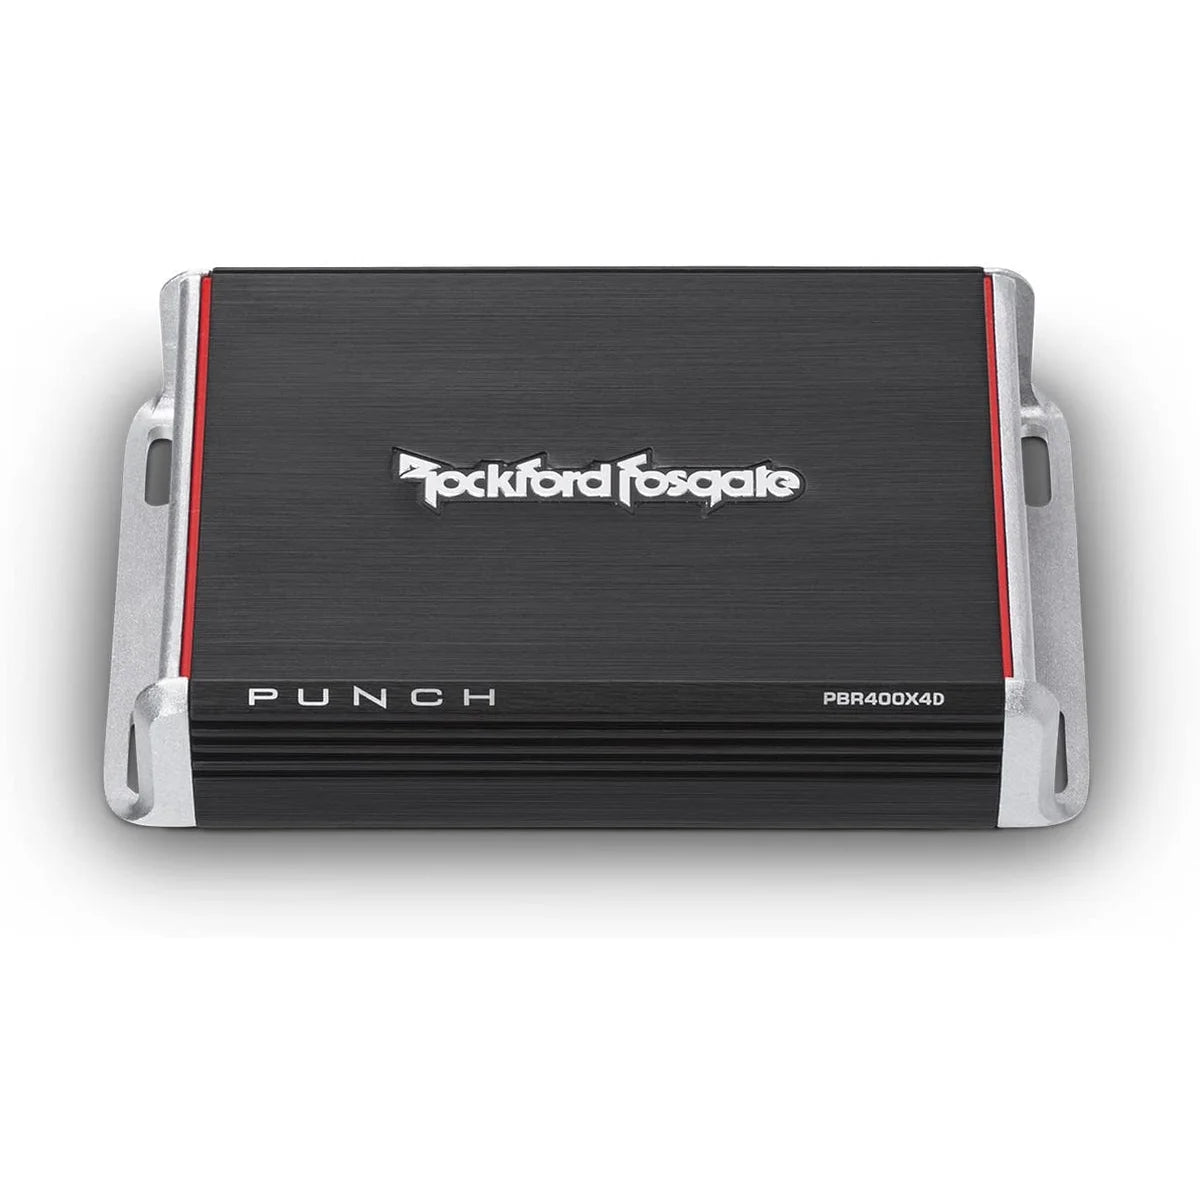 ROCKFORD FOSGATE Rockford Fosgate Verstärker Punch Verstärker 4-Kanal PBR400x4D4-Kanal